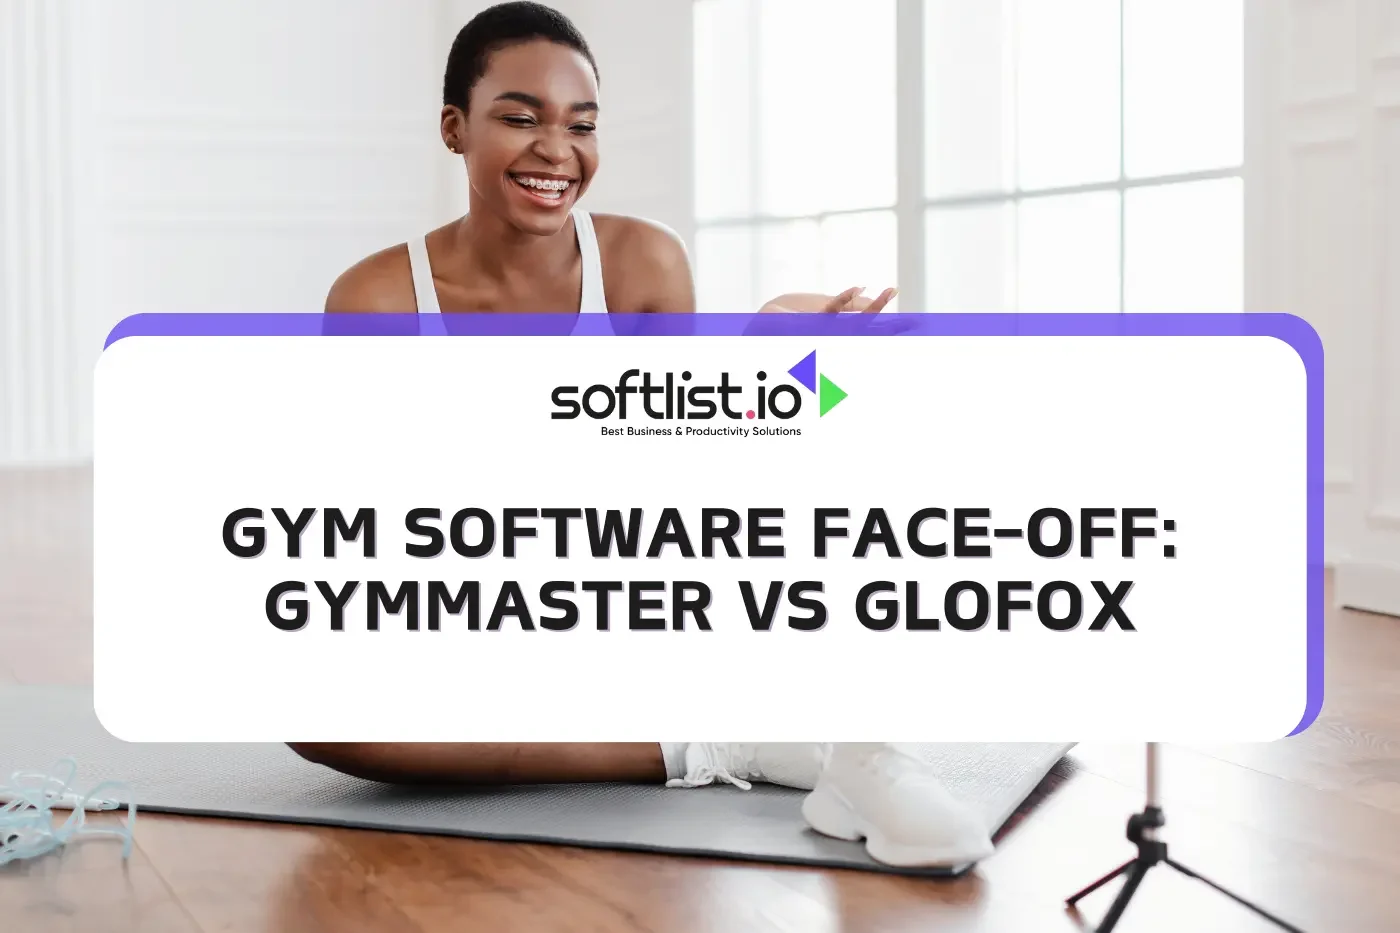 Gym Software Face-Off: GymMaster vs GloFox